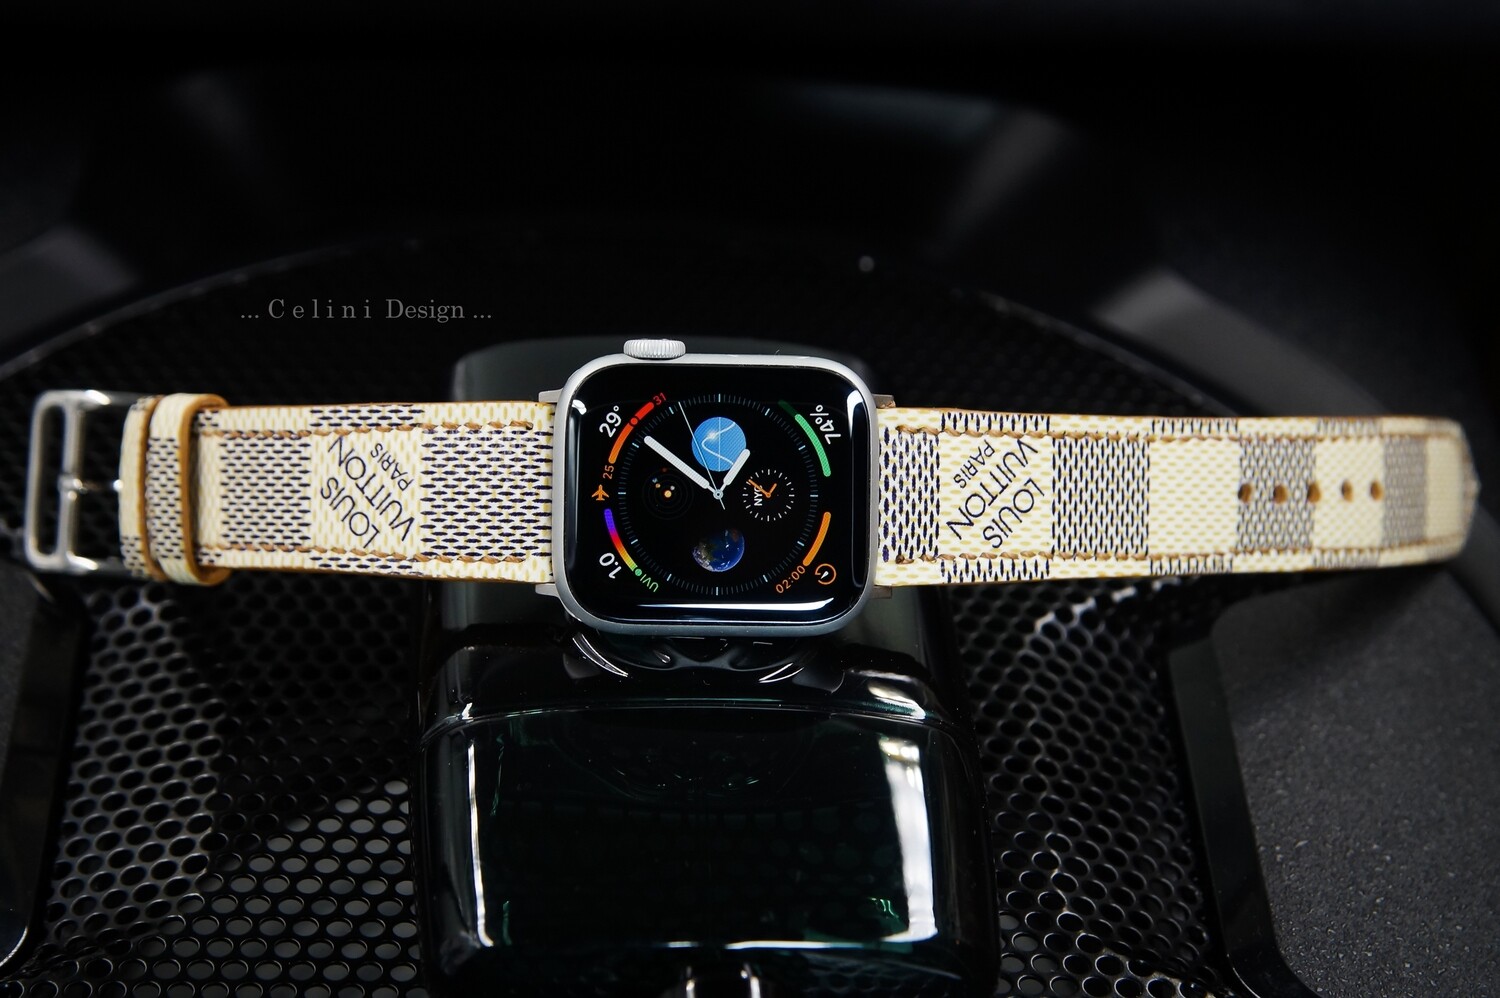 Gucci Apple Watch Ultra Band